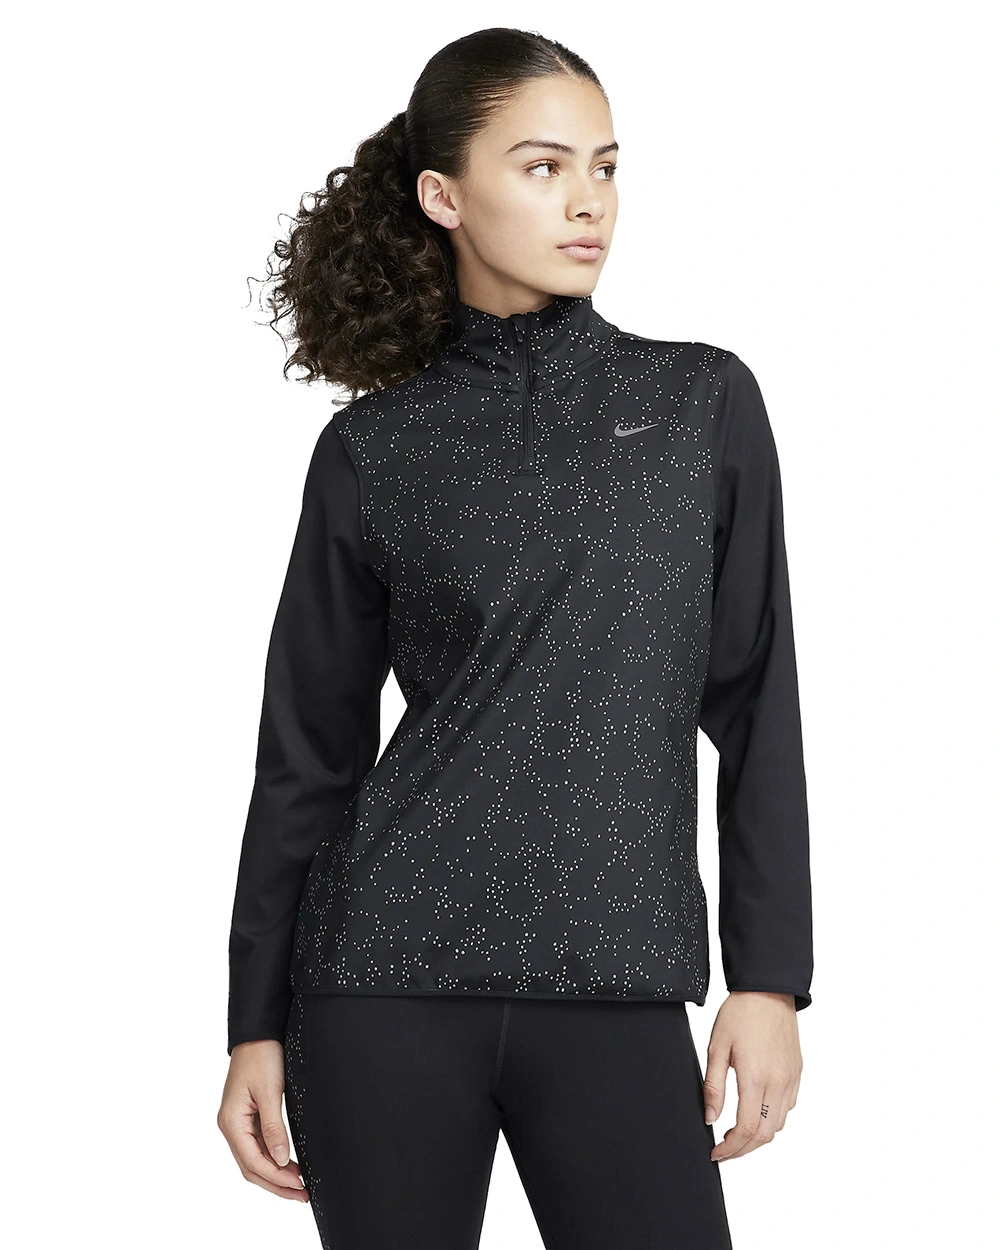 Nike Swift Element sportsweater dames